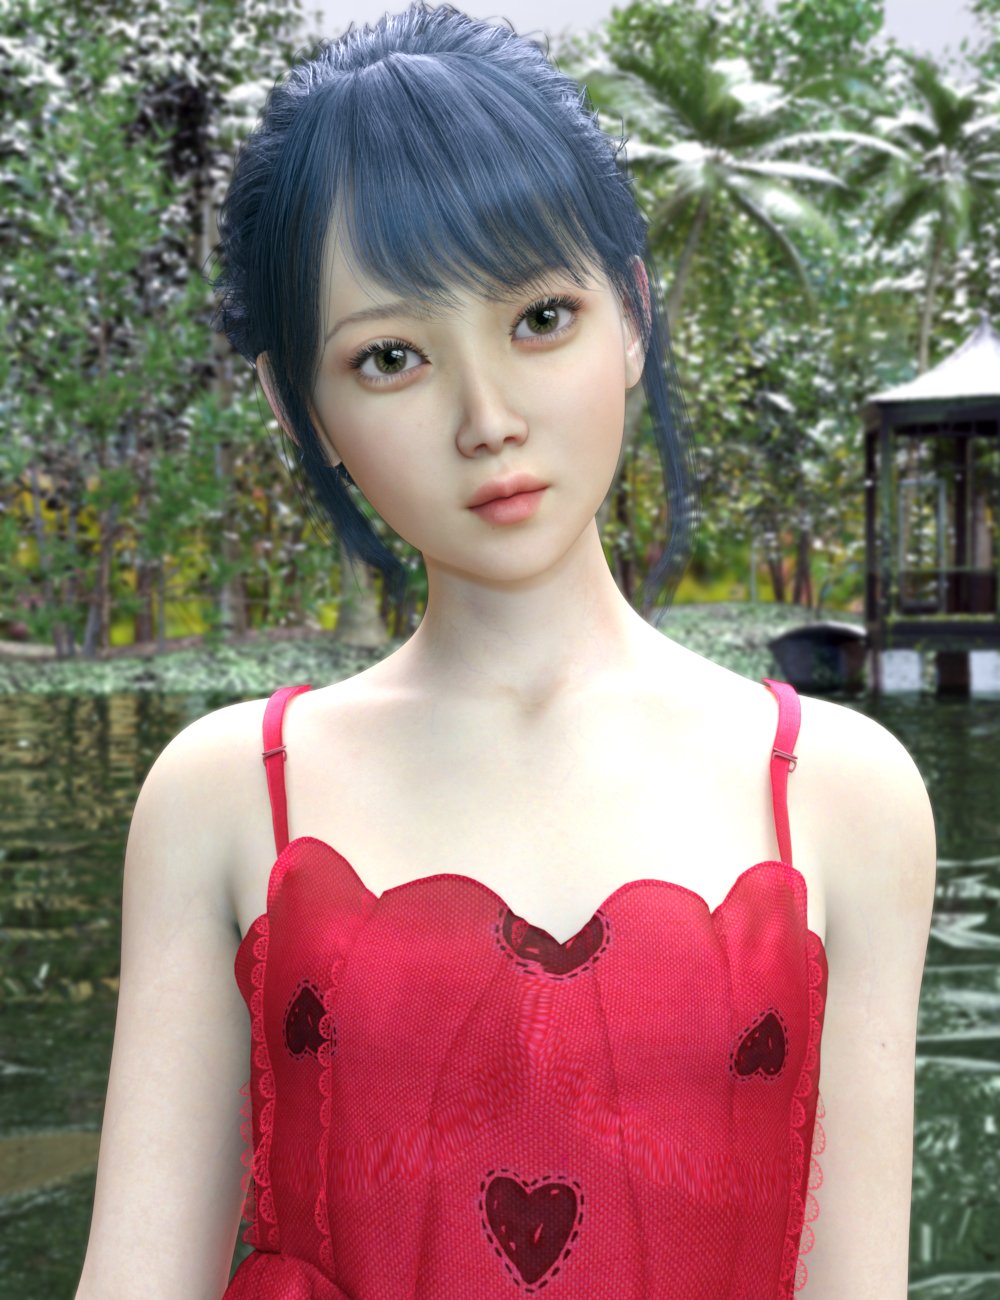 Vo Xiao Xue For Genesis 8 1 Female Daz 3d